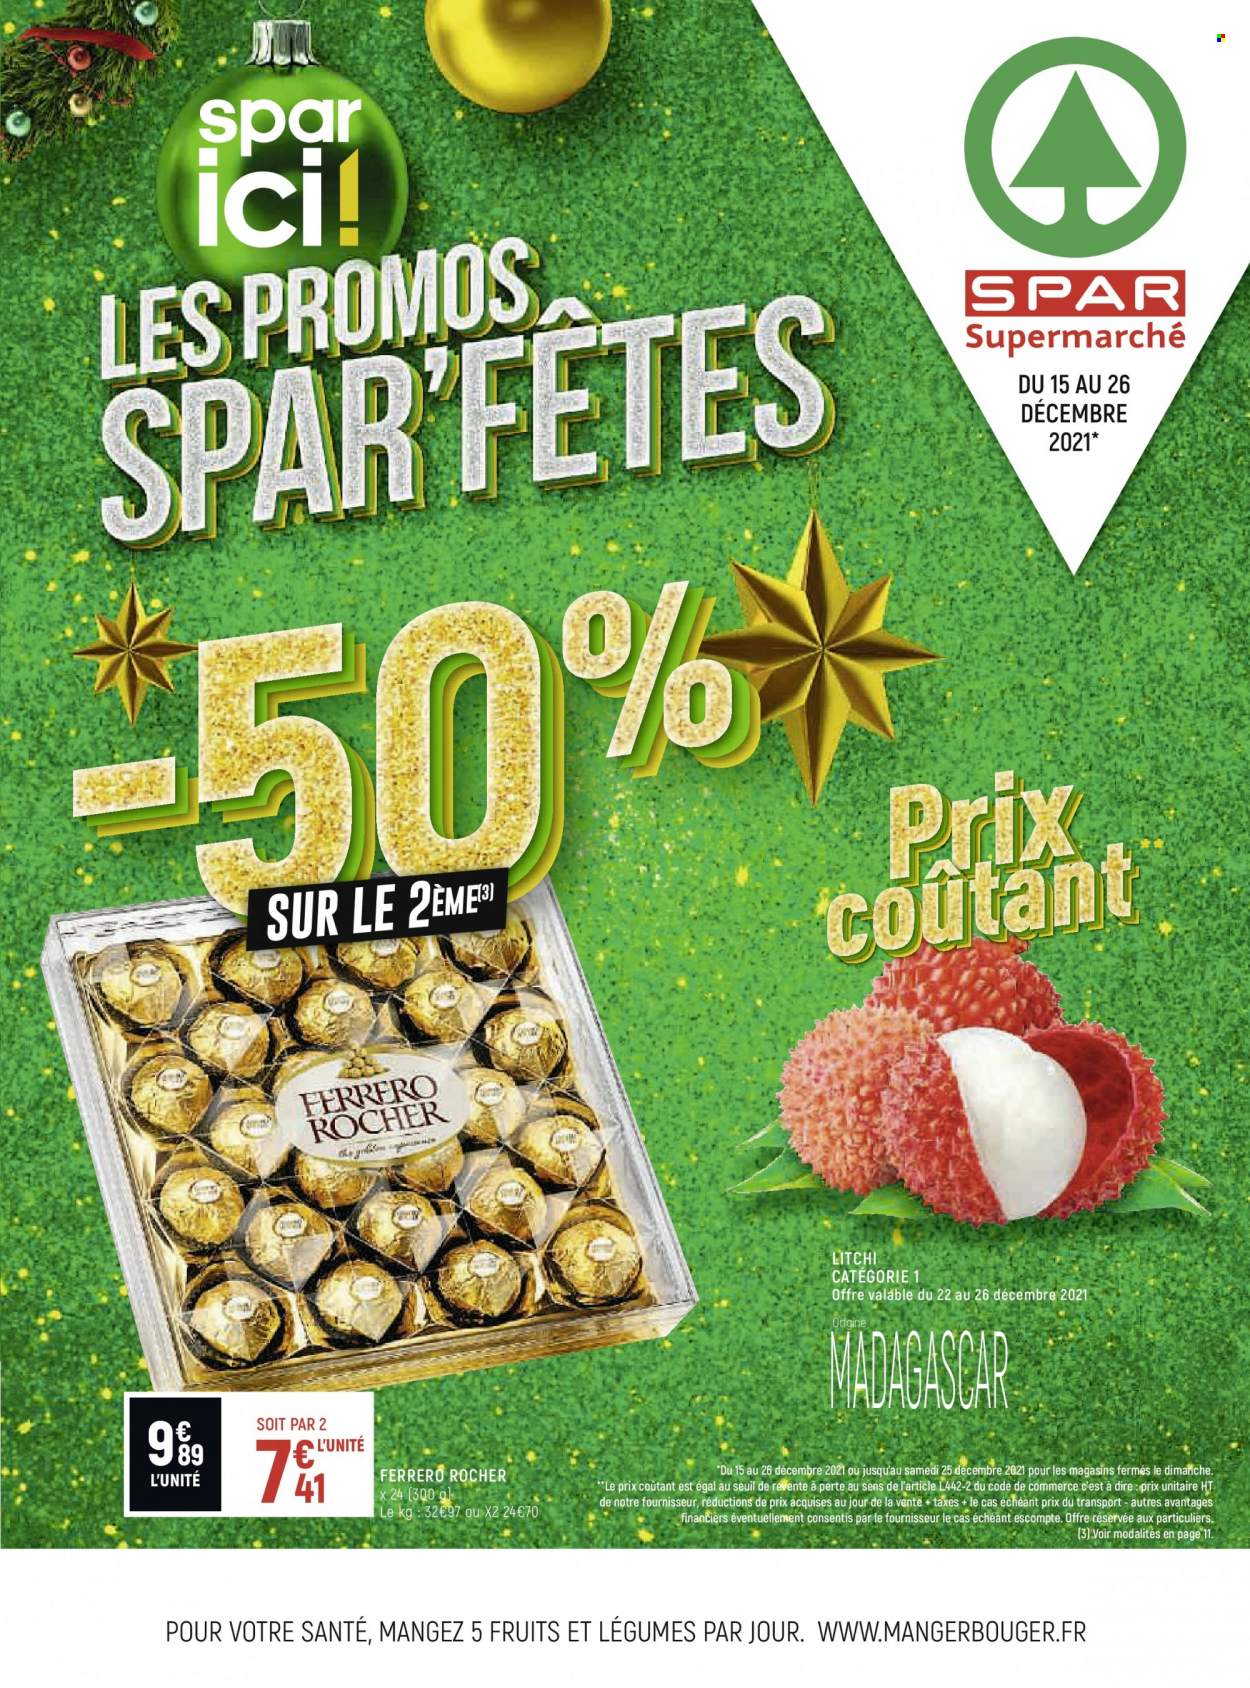 thumbnail - Catalogue Spar Supermarché - 15/12/2021 - 26/12/2021 - Produits soldés - litchi, Ferrero Rocher. Page 1.